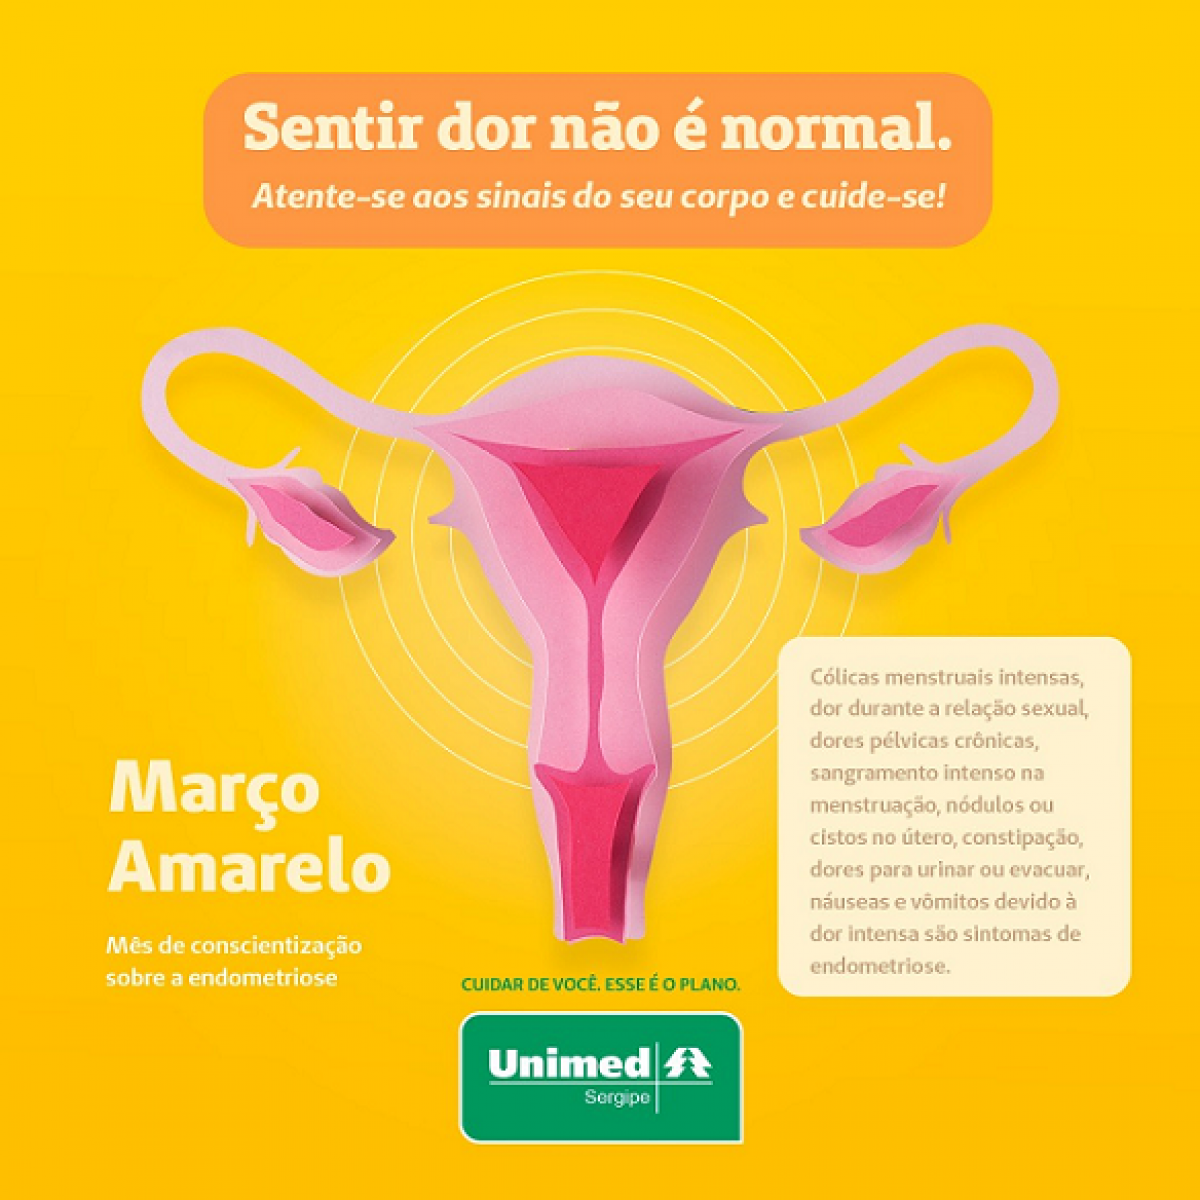 Março Amarelo: endometriose causa cólicas incapacitantes e prejudica qualidade de vida (Imagem: Unimed/SE)